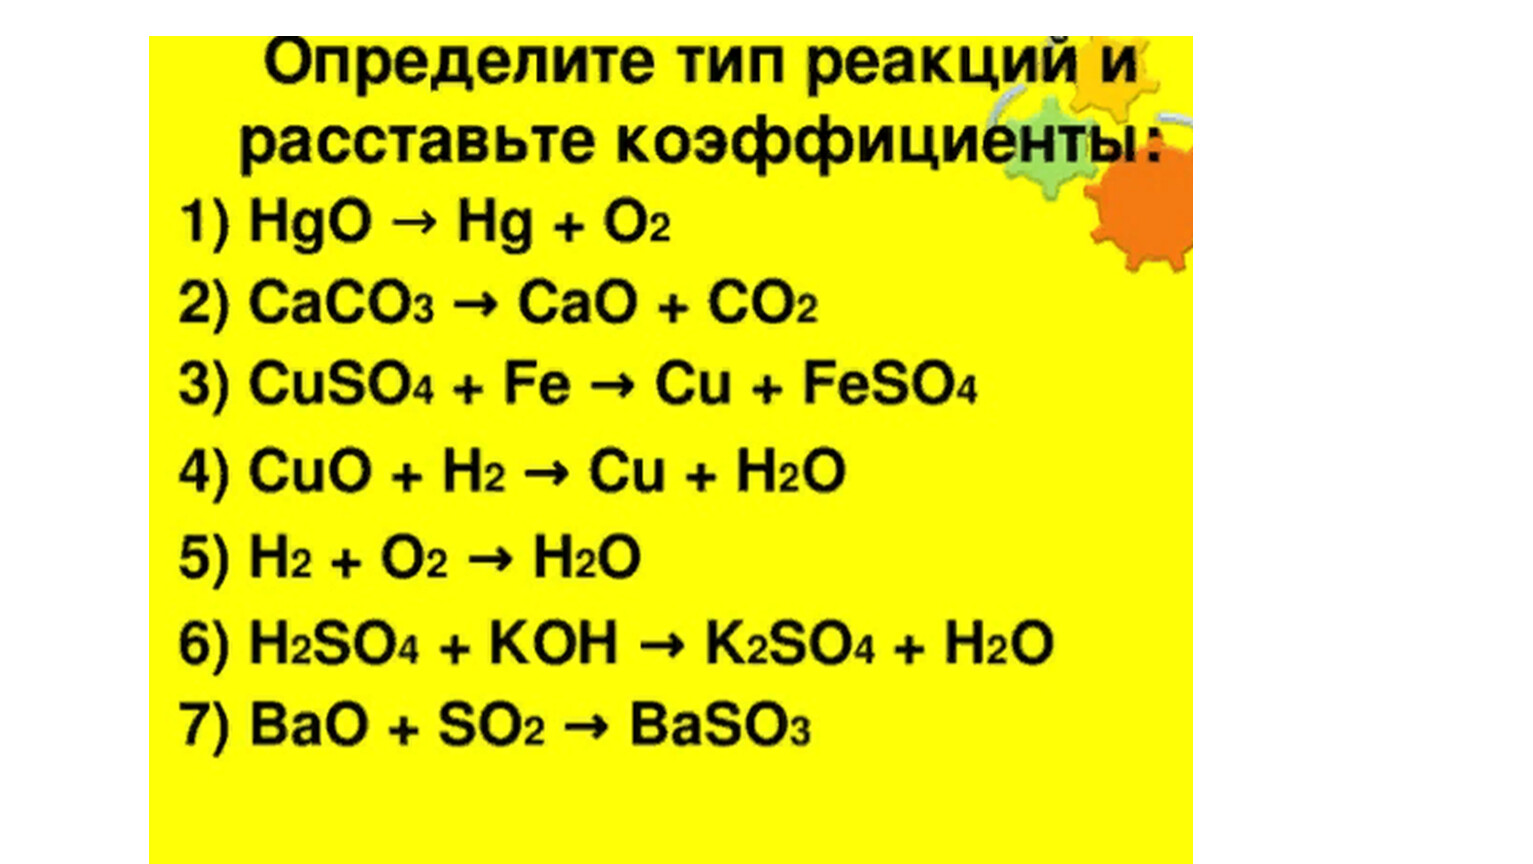 Cu so4 k oh. Caco3 cao co2 Тип реакции. Расставьте коэффициент и определит Тип рякции. Расставить коэффициенты и определить Тип химической реакции. Расставьте коэффициенты и определите Тип химической реакции.